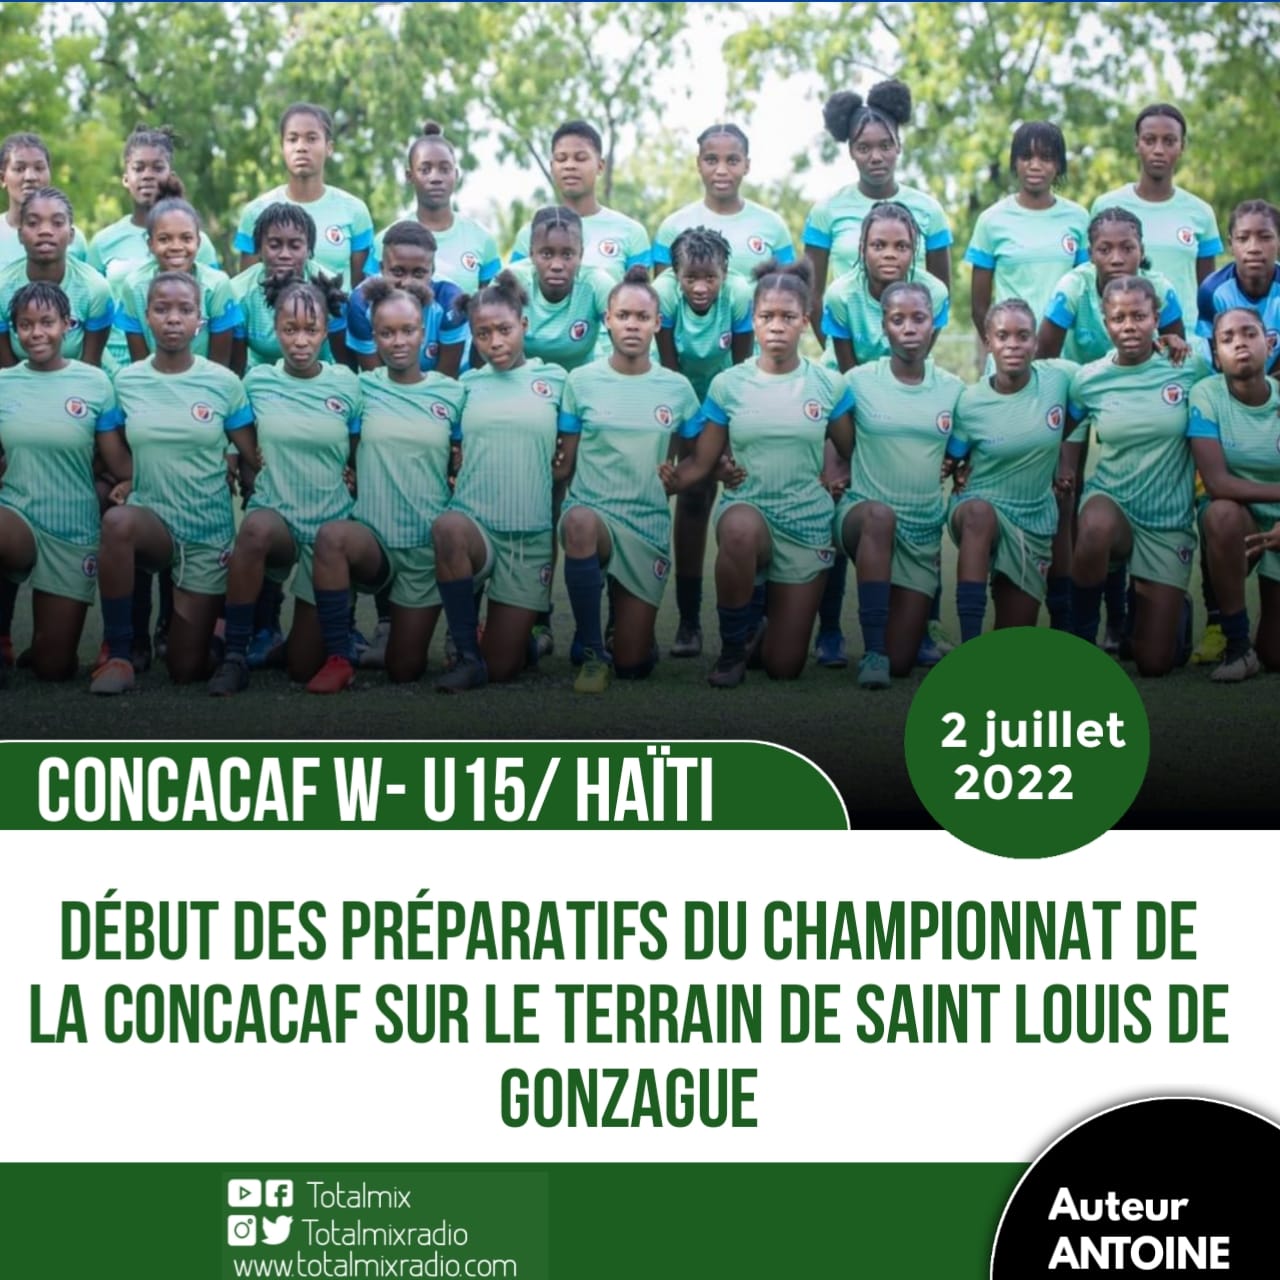 CONCACAF W- U15 : LA SÉLECTION HAÏTIENNE DÉBUTE SA PRÉPARATION